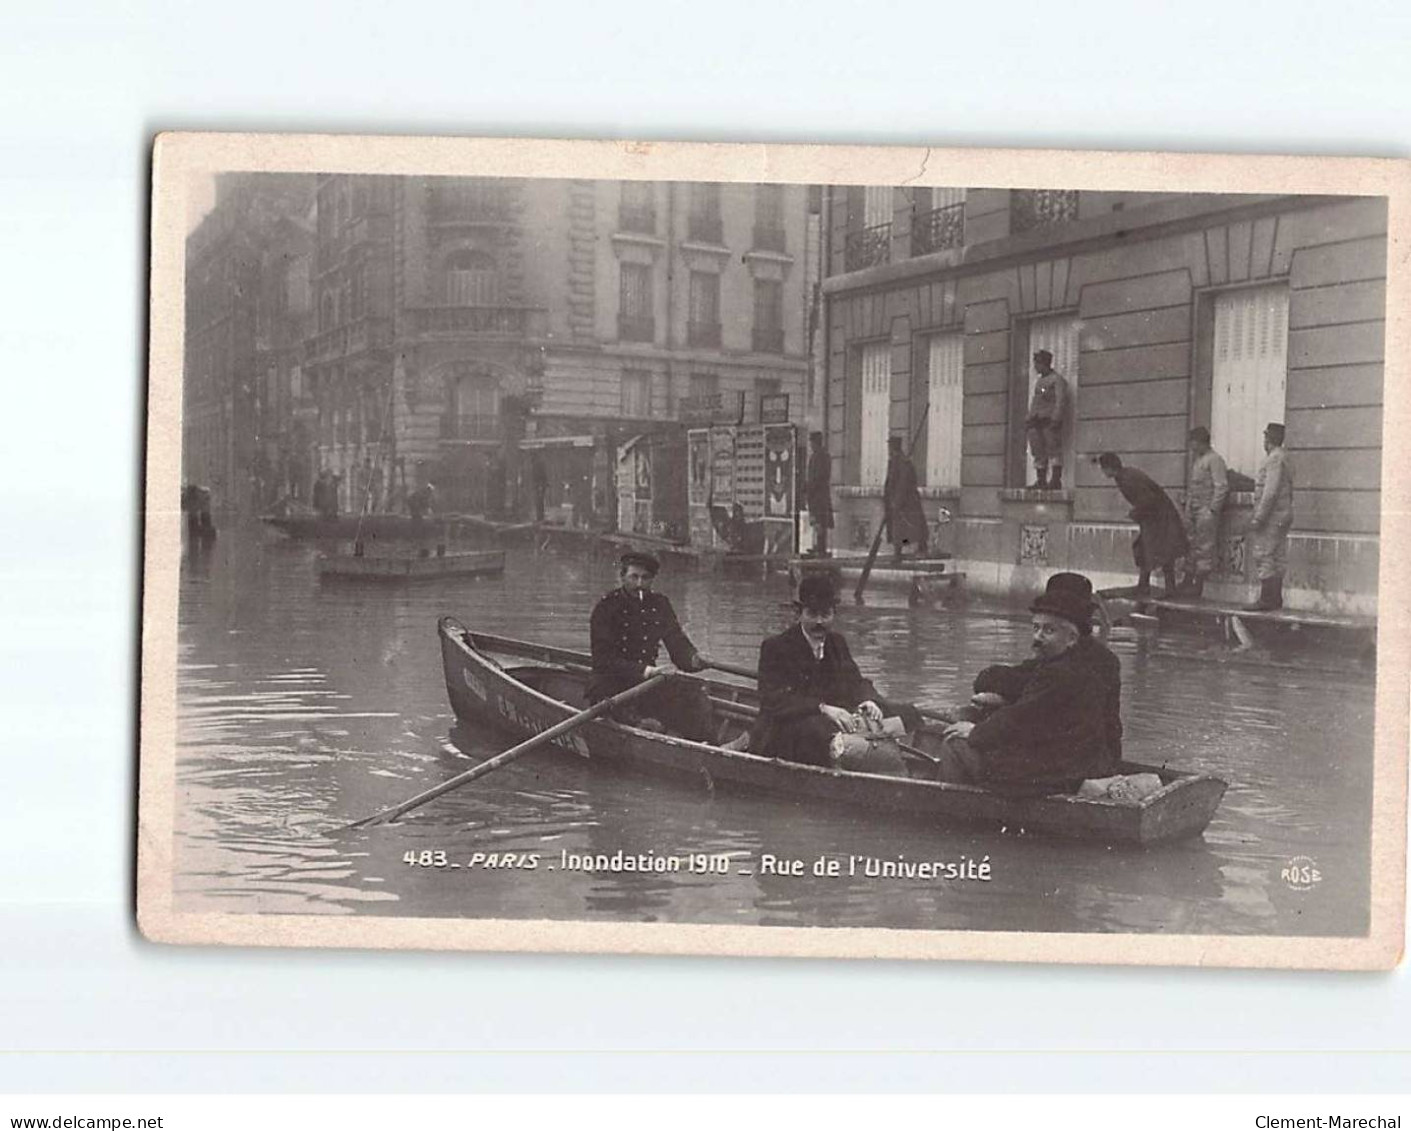 PARIS : Inondations 1910, Rue De L'Université - état - Paris Flood, 1910